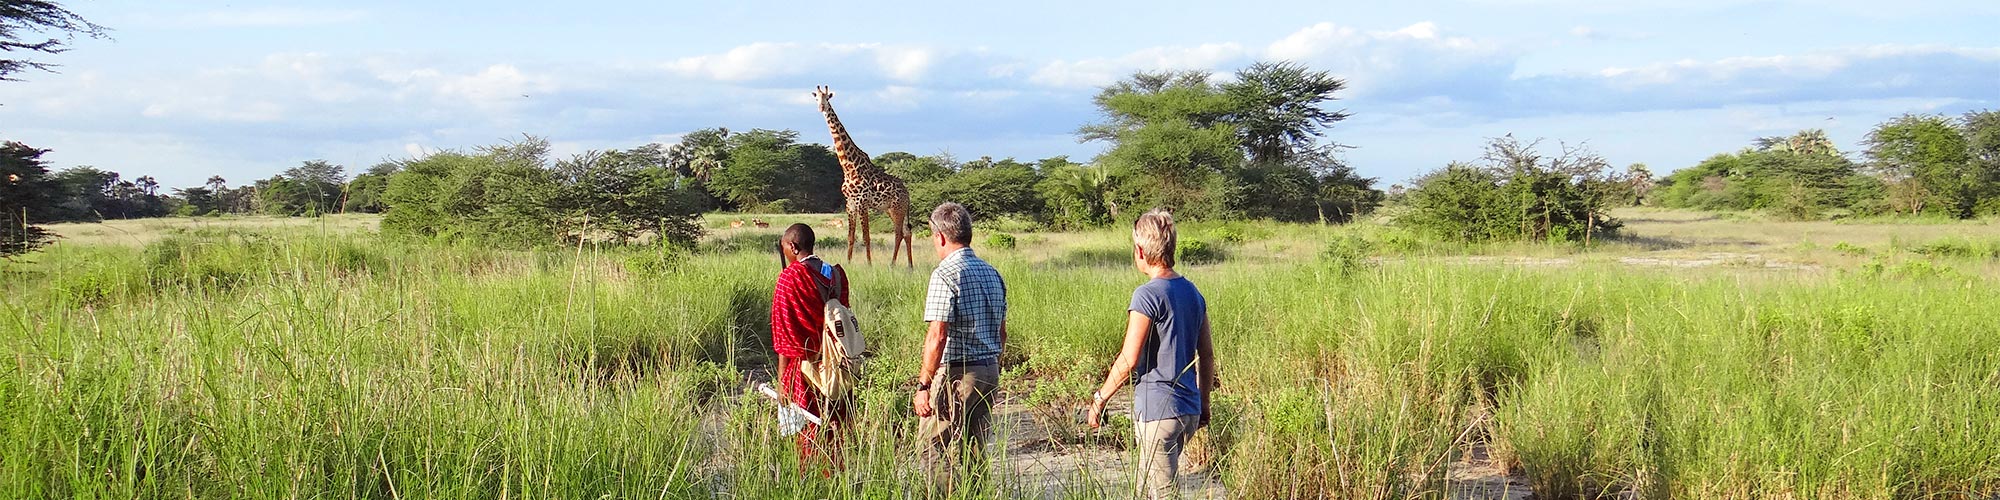 Fuss-Safari in Tanzania